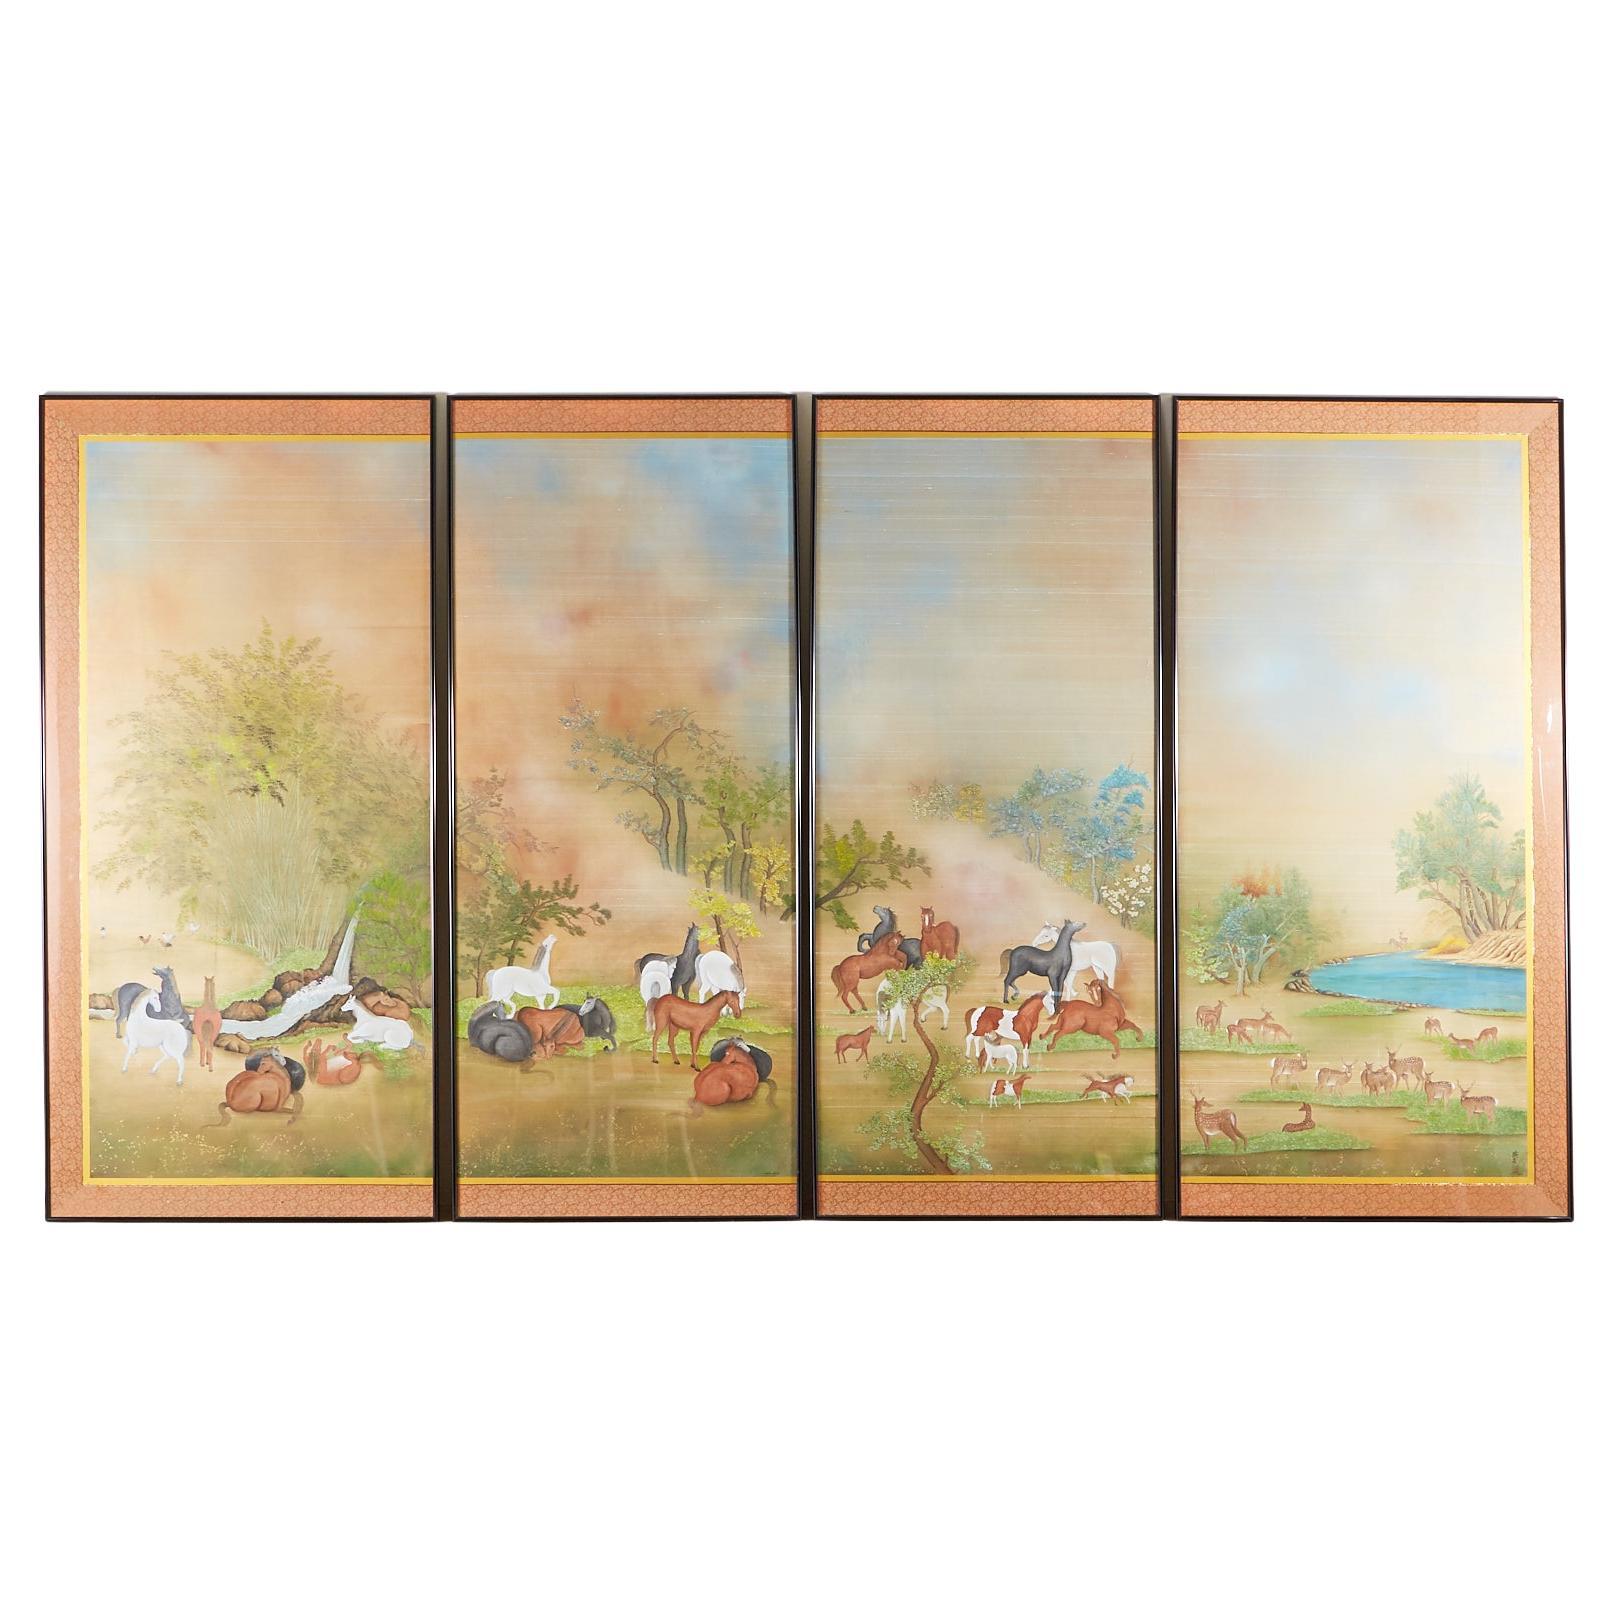 Japanische Showa-Gemälde auf Seidenpferden und Hirsch von Carlota T. Ige 